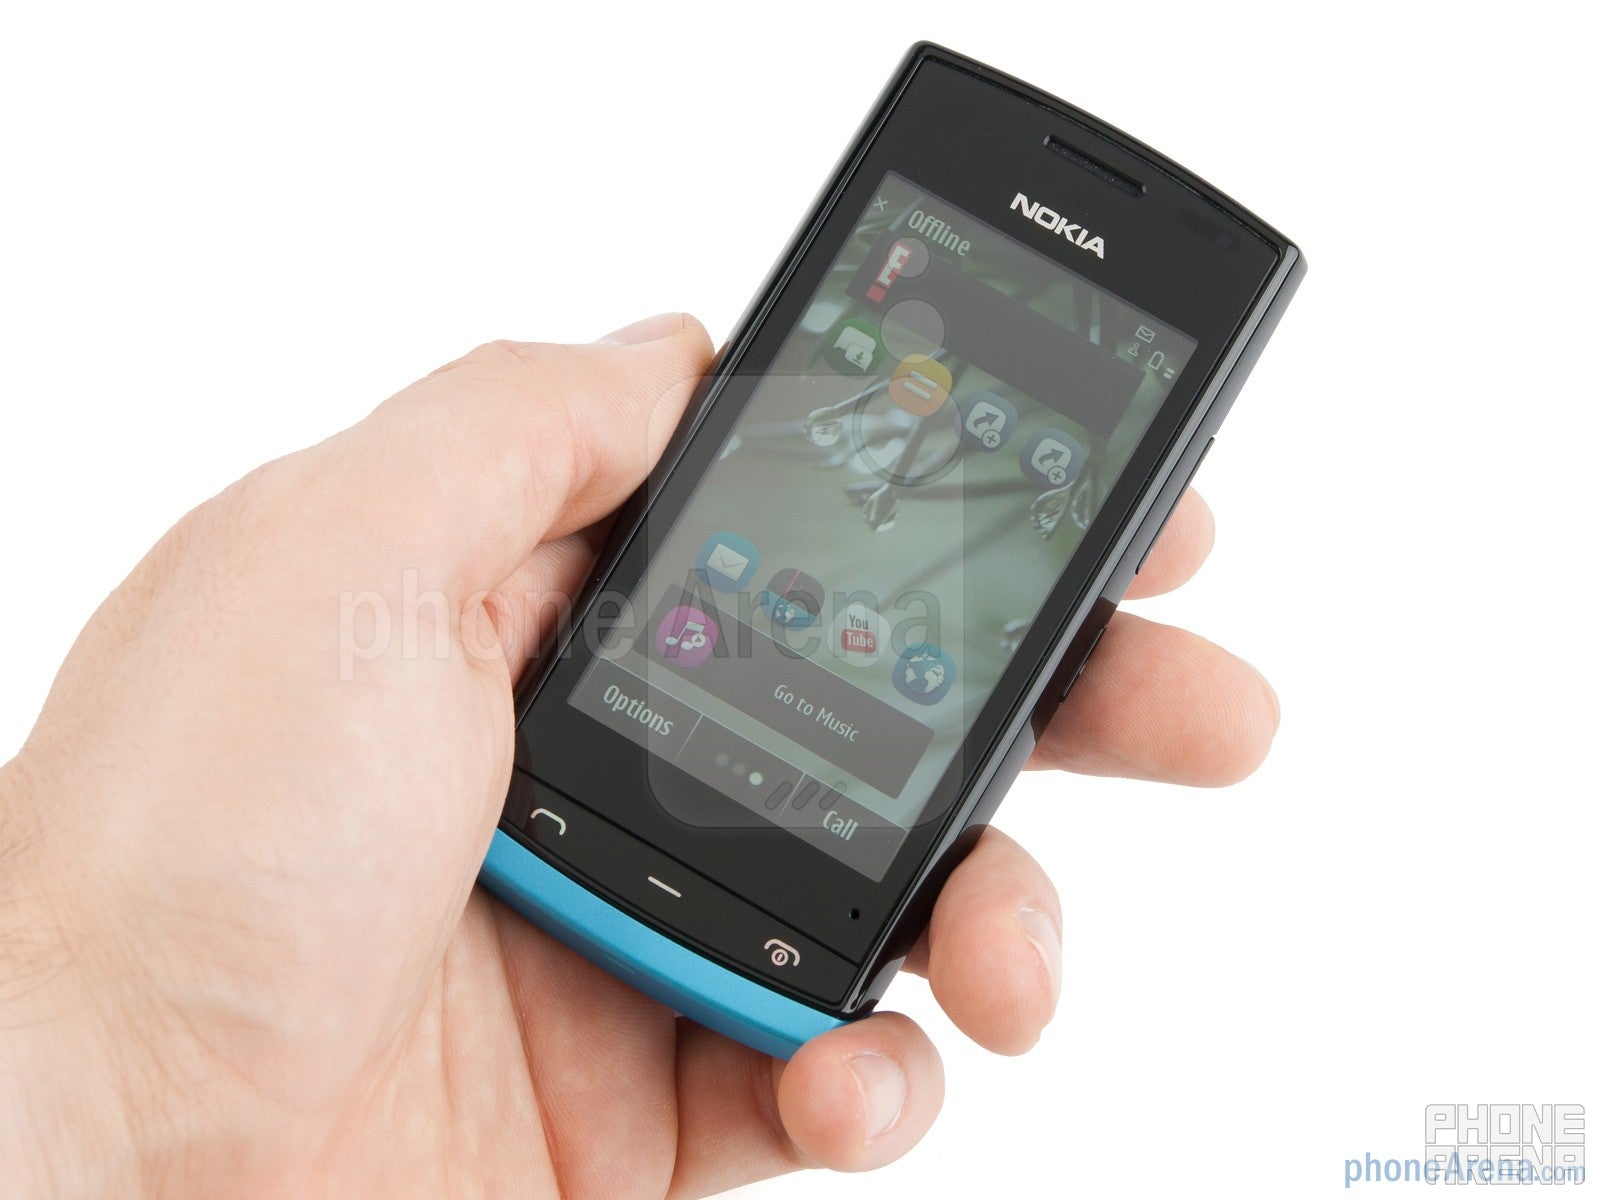 Nokia 500 Review